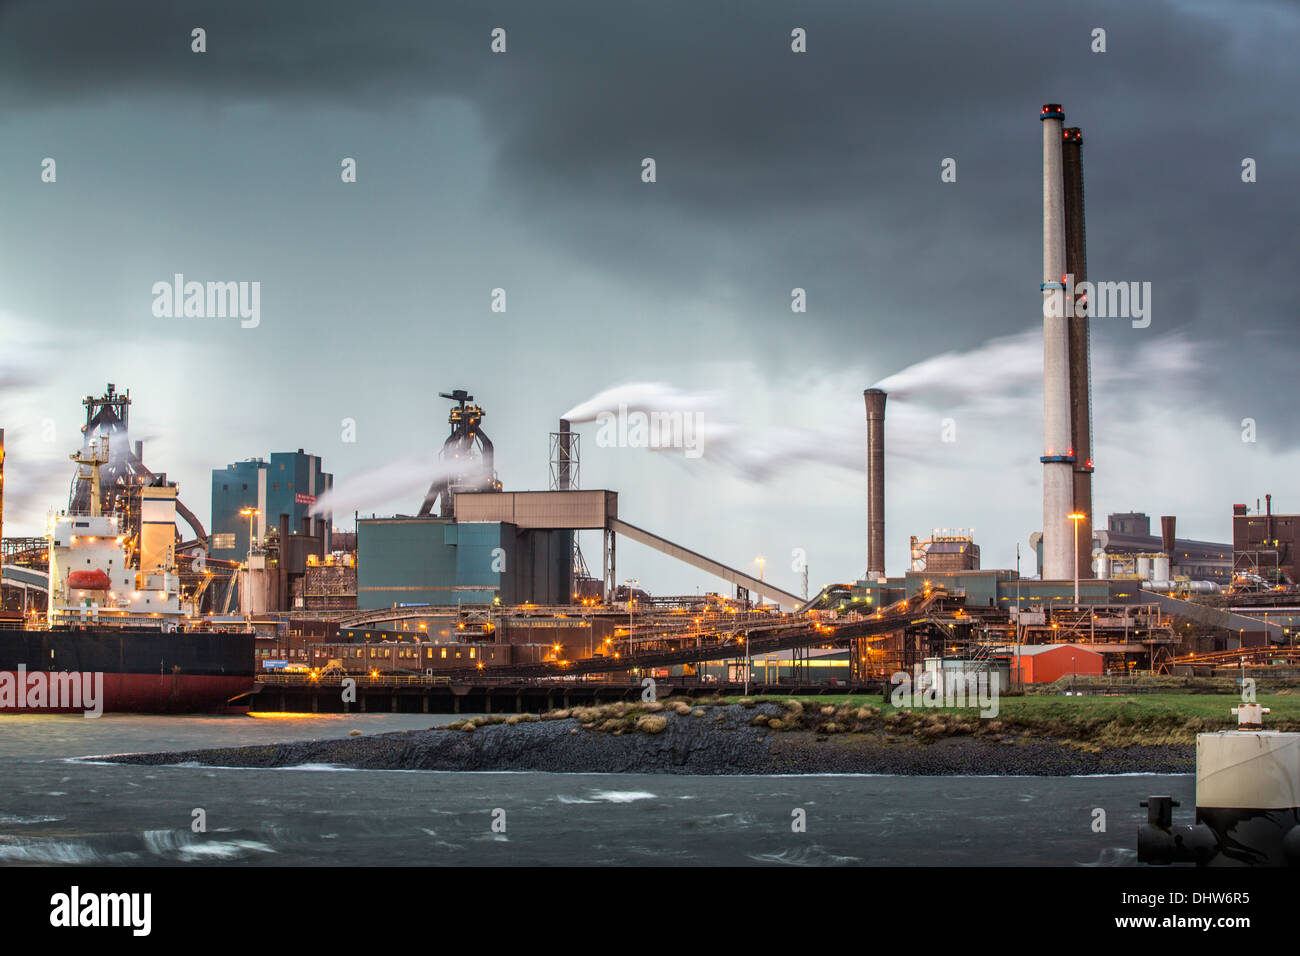 Pays-bas, IJmuiden, Tata Steel factory, les hauts fourneaux. Twilight Banque D'Images